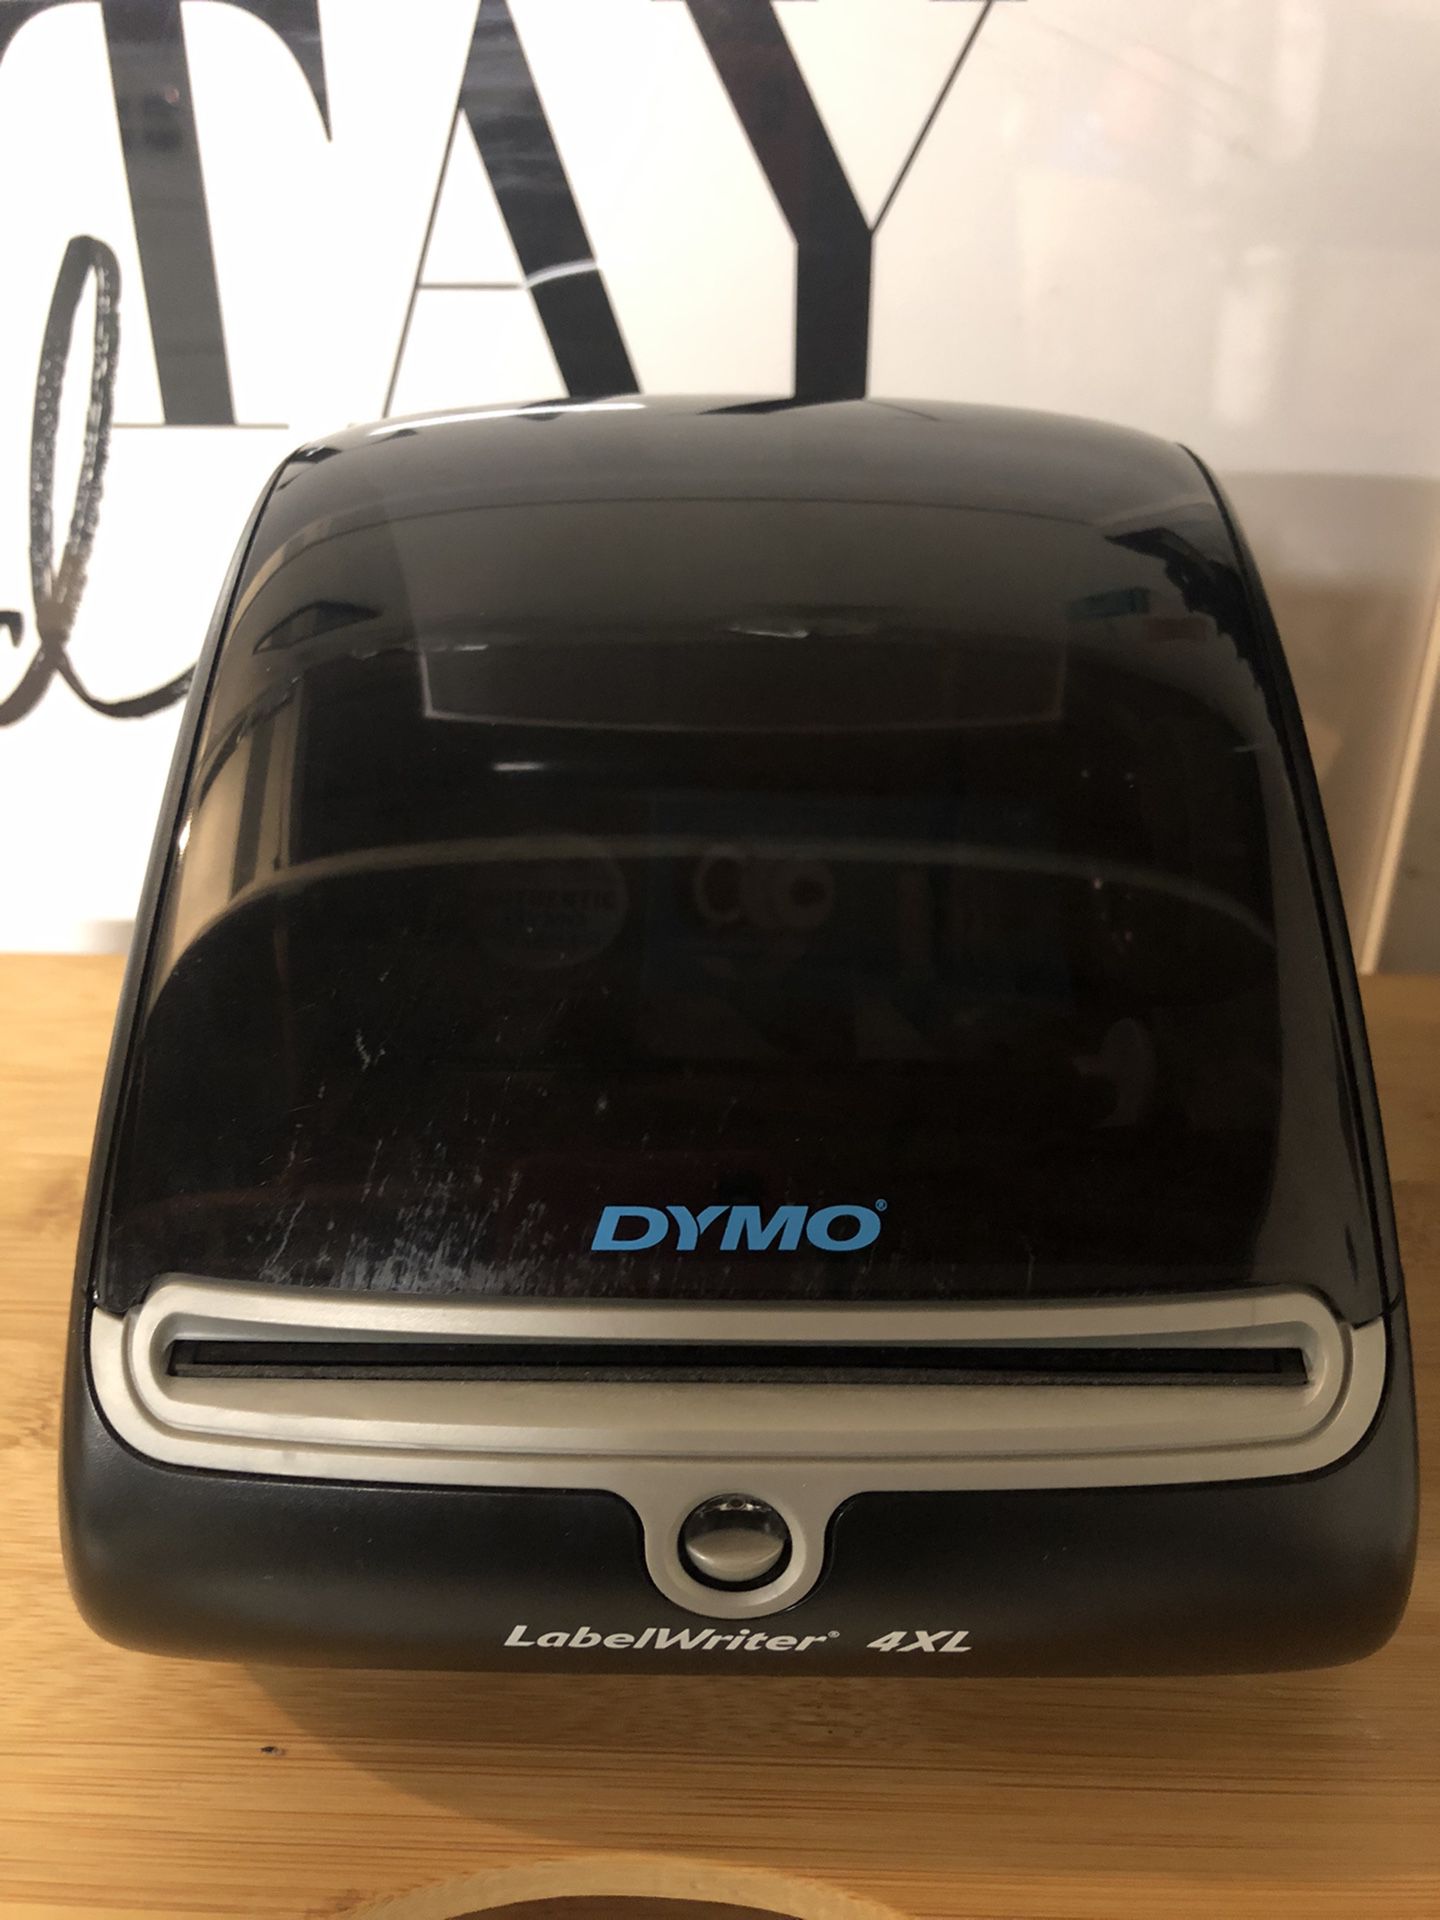 Dymo 4XL Label Thermal Printer